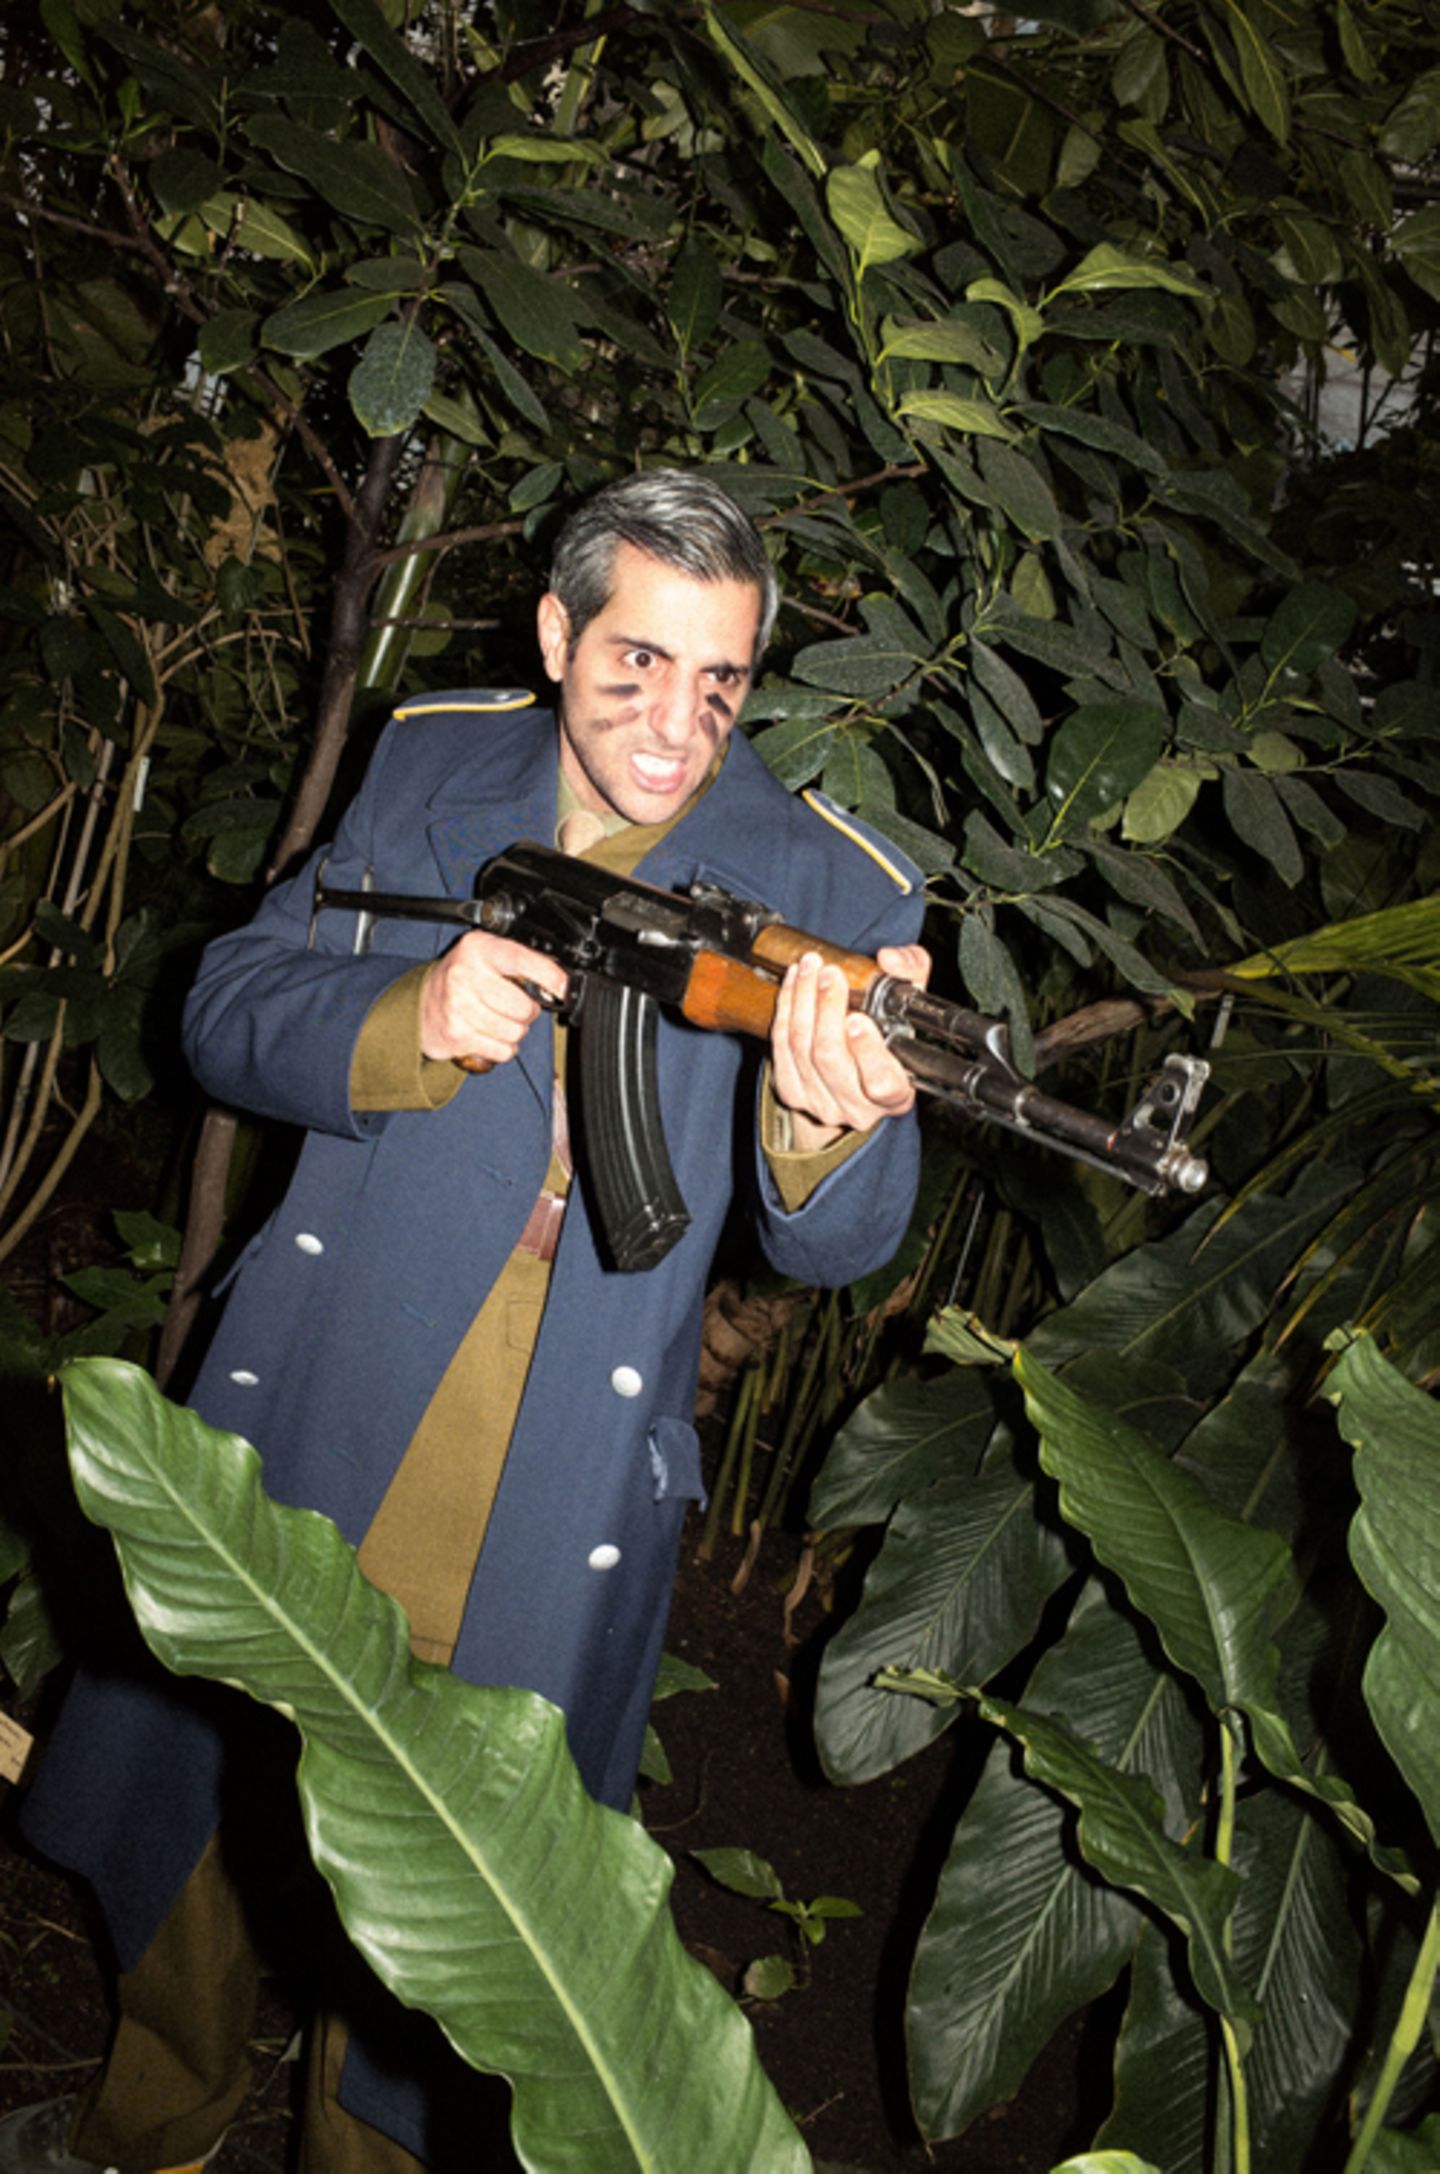 Michel Abdollahi steht in Uniform zwischen großen Grünpflanzen und hält ein Gewehr in der Hand.